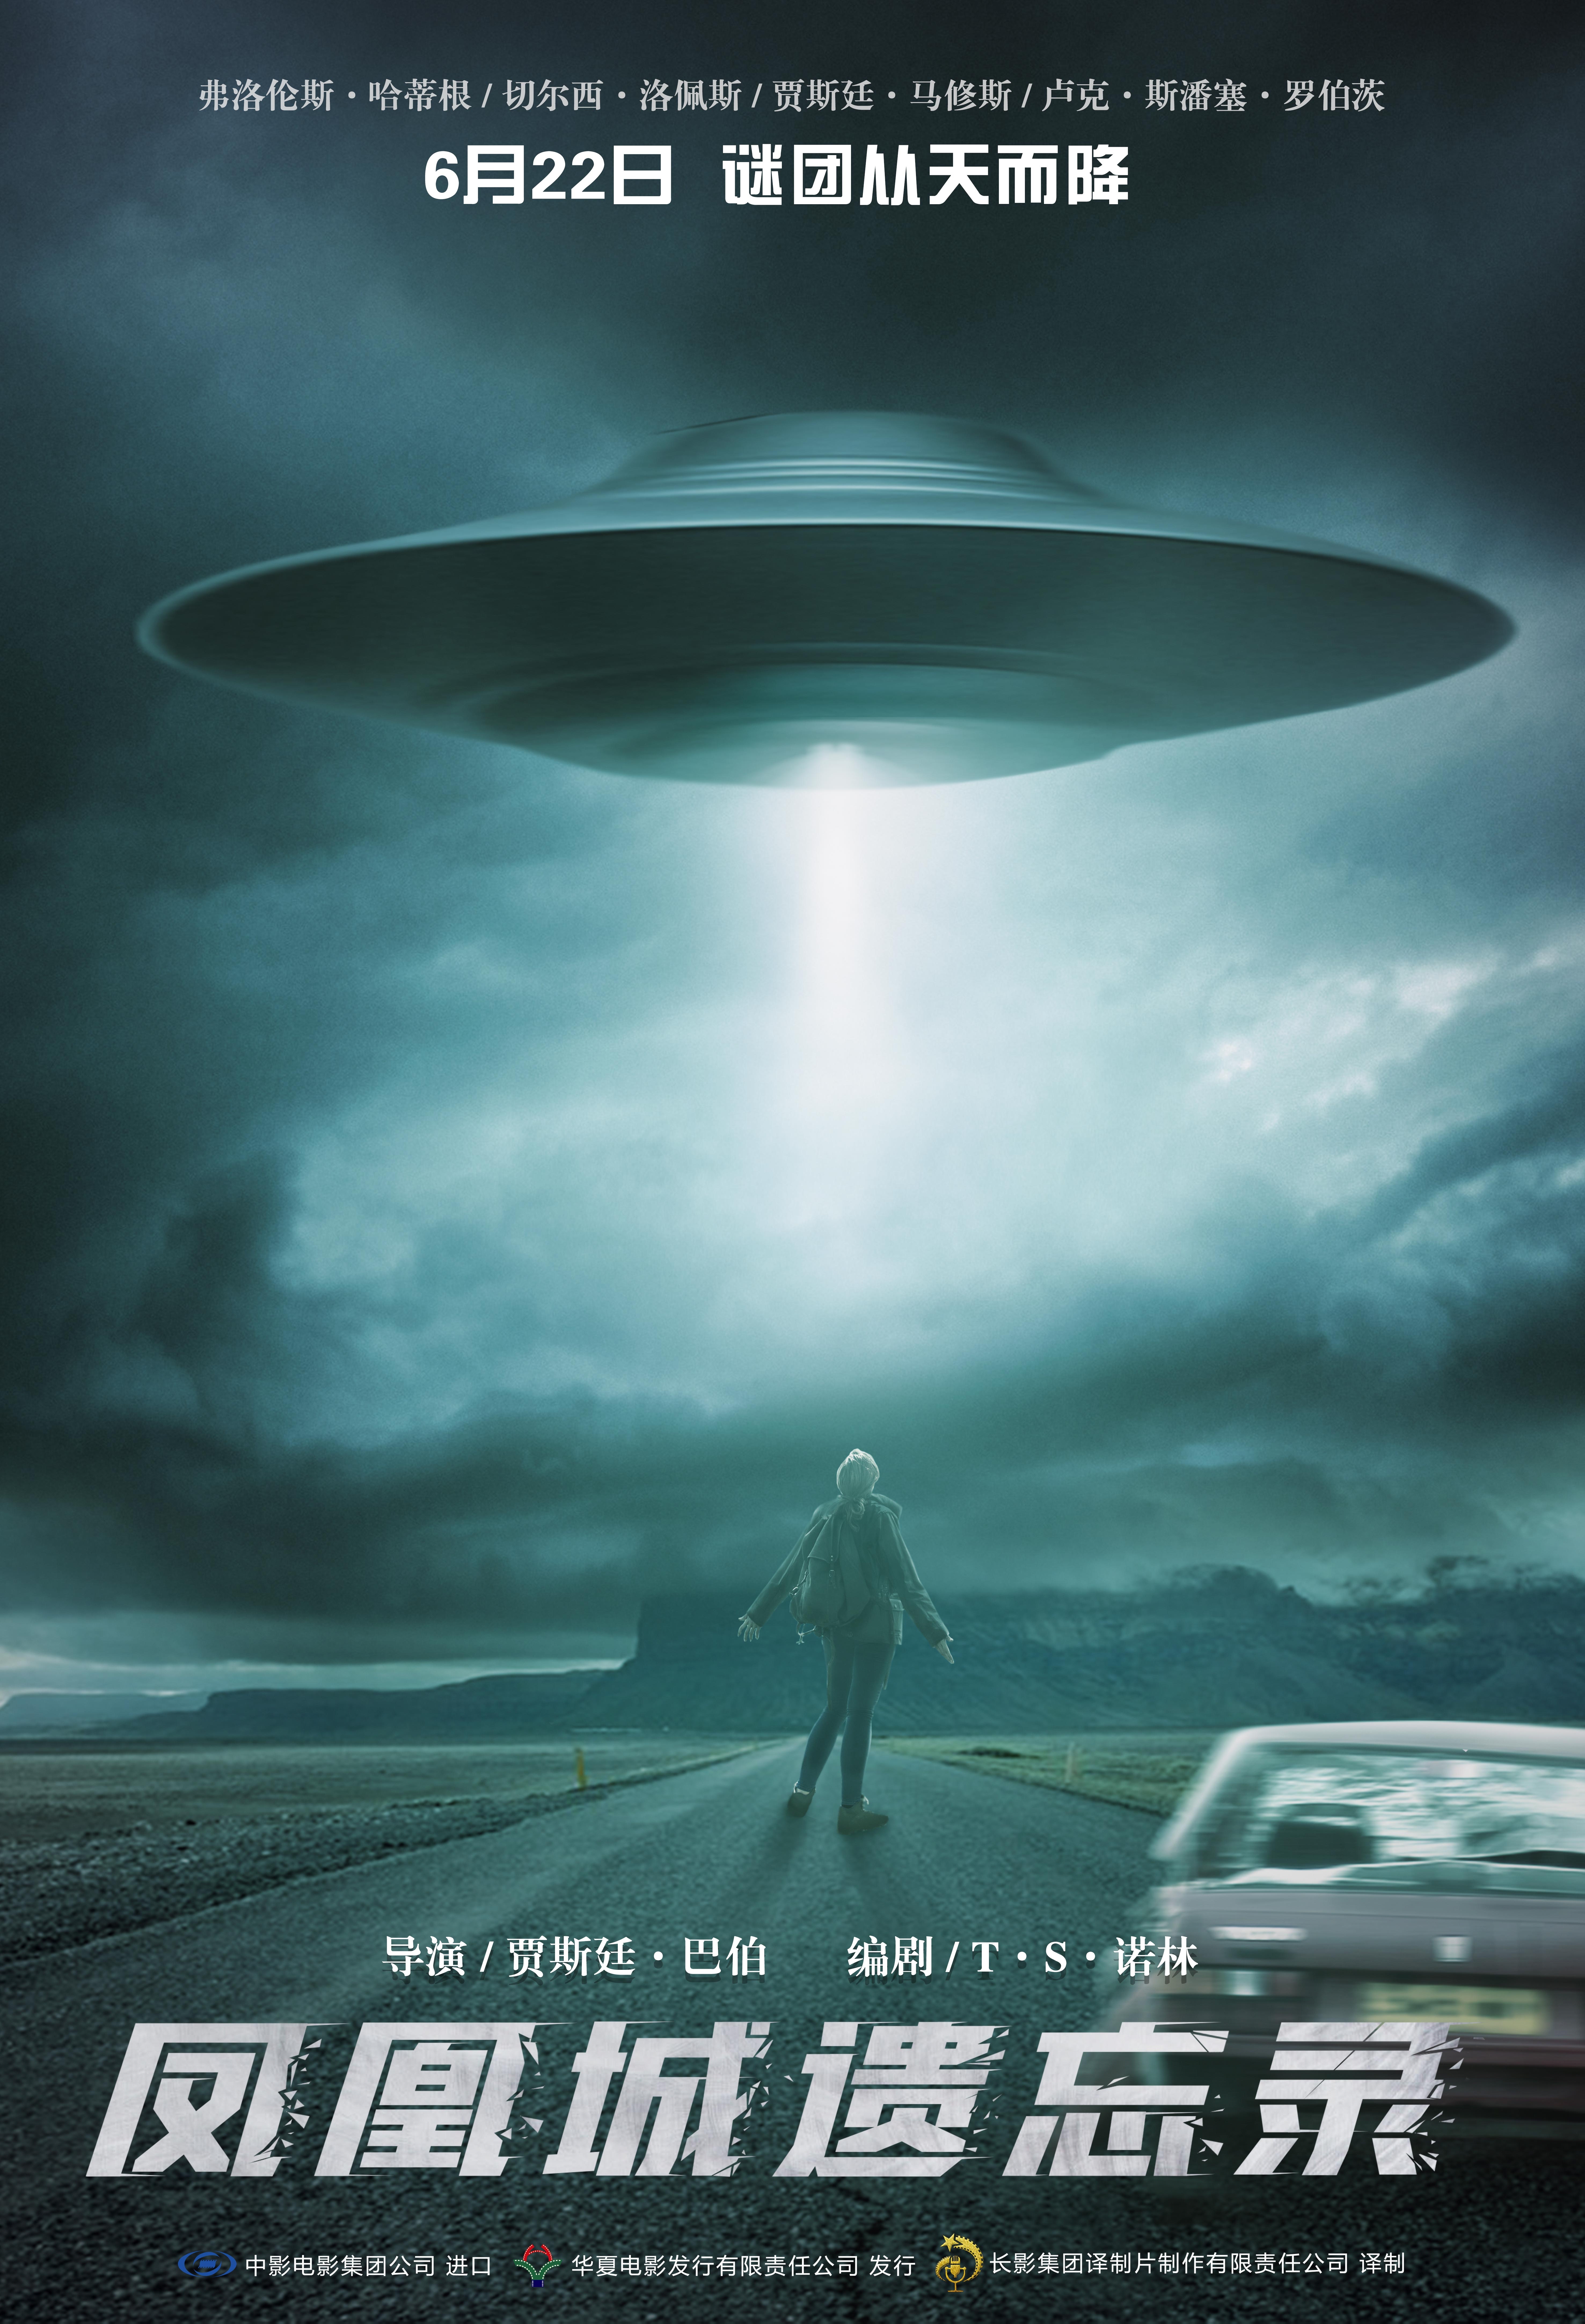 《凤凰城遗忘录》定档6.22 还原史上著名UFO事件